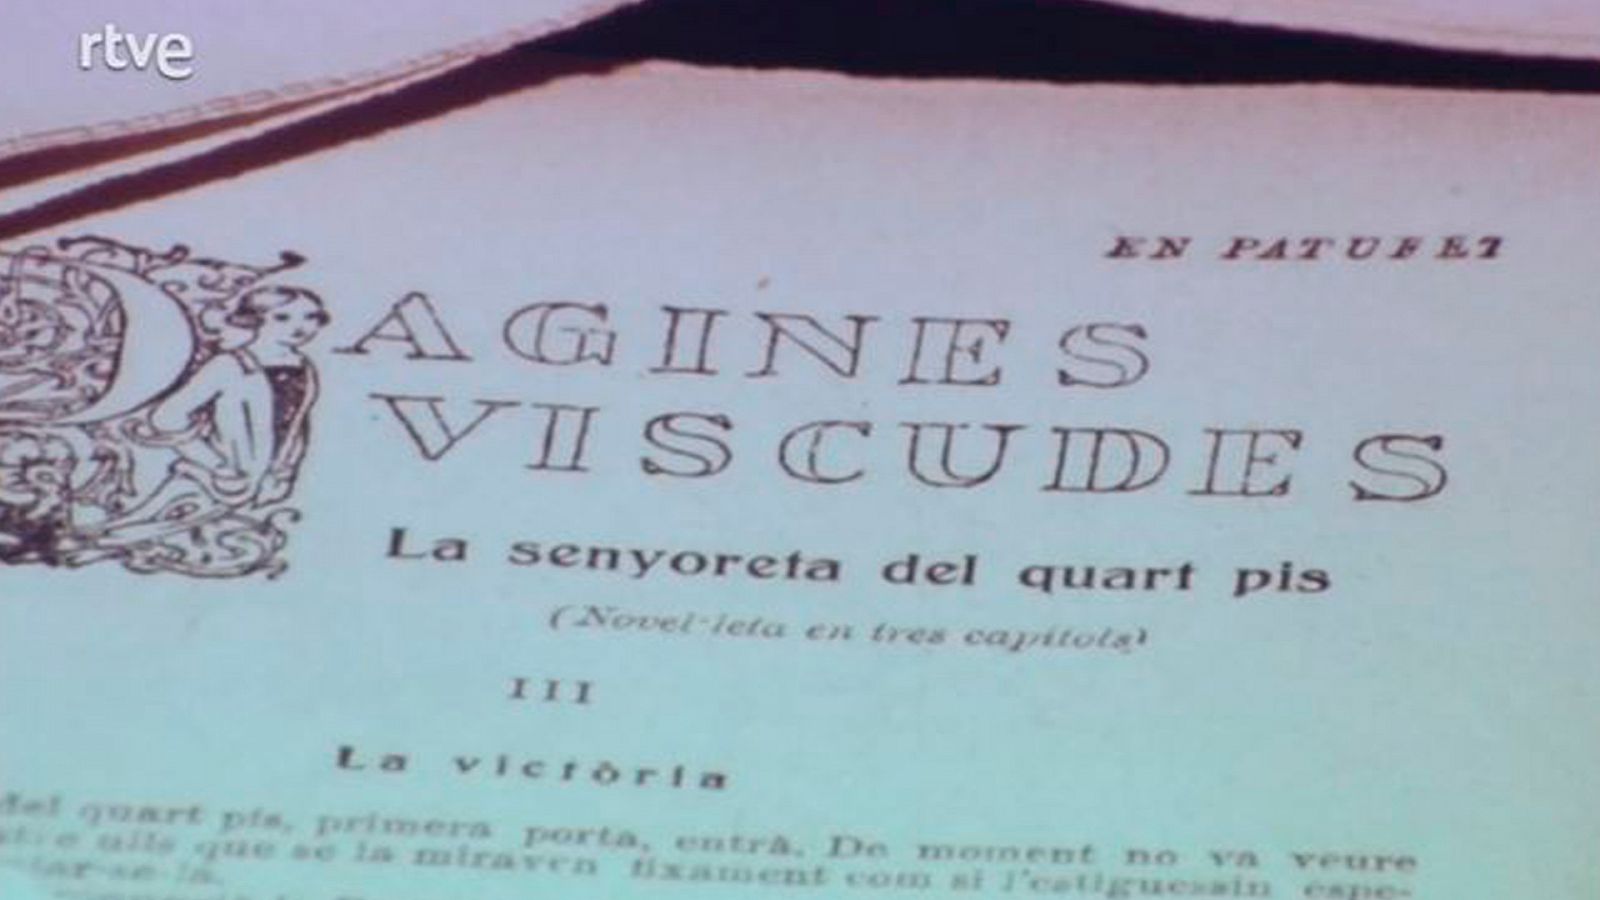 Arxiu TVE Catalunya - Signes - Exposició dedicada a la revista 'En patufet'